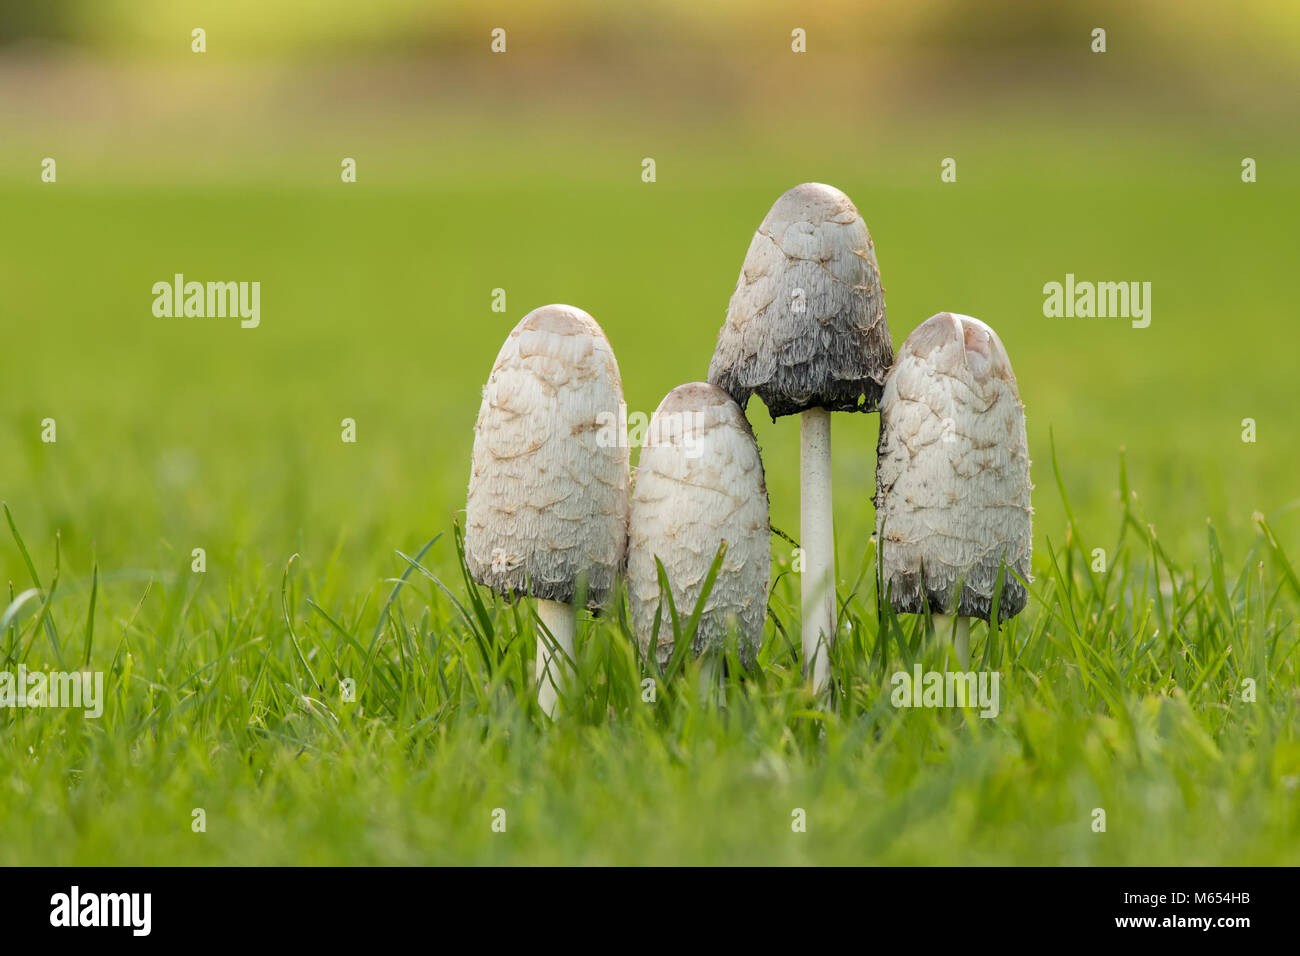 Gruppe von vier Shaggy Inkcap Pilze (Coprinus comatus) wächst auf einem Rasen. Tipperary, Irland Stockfoto